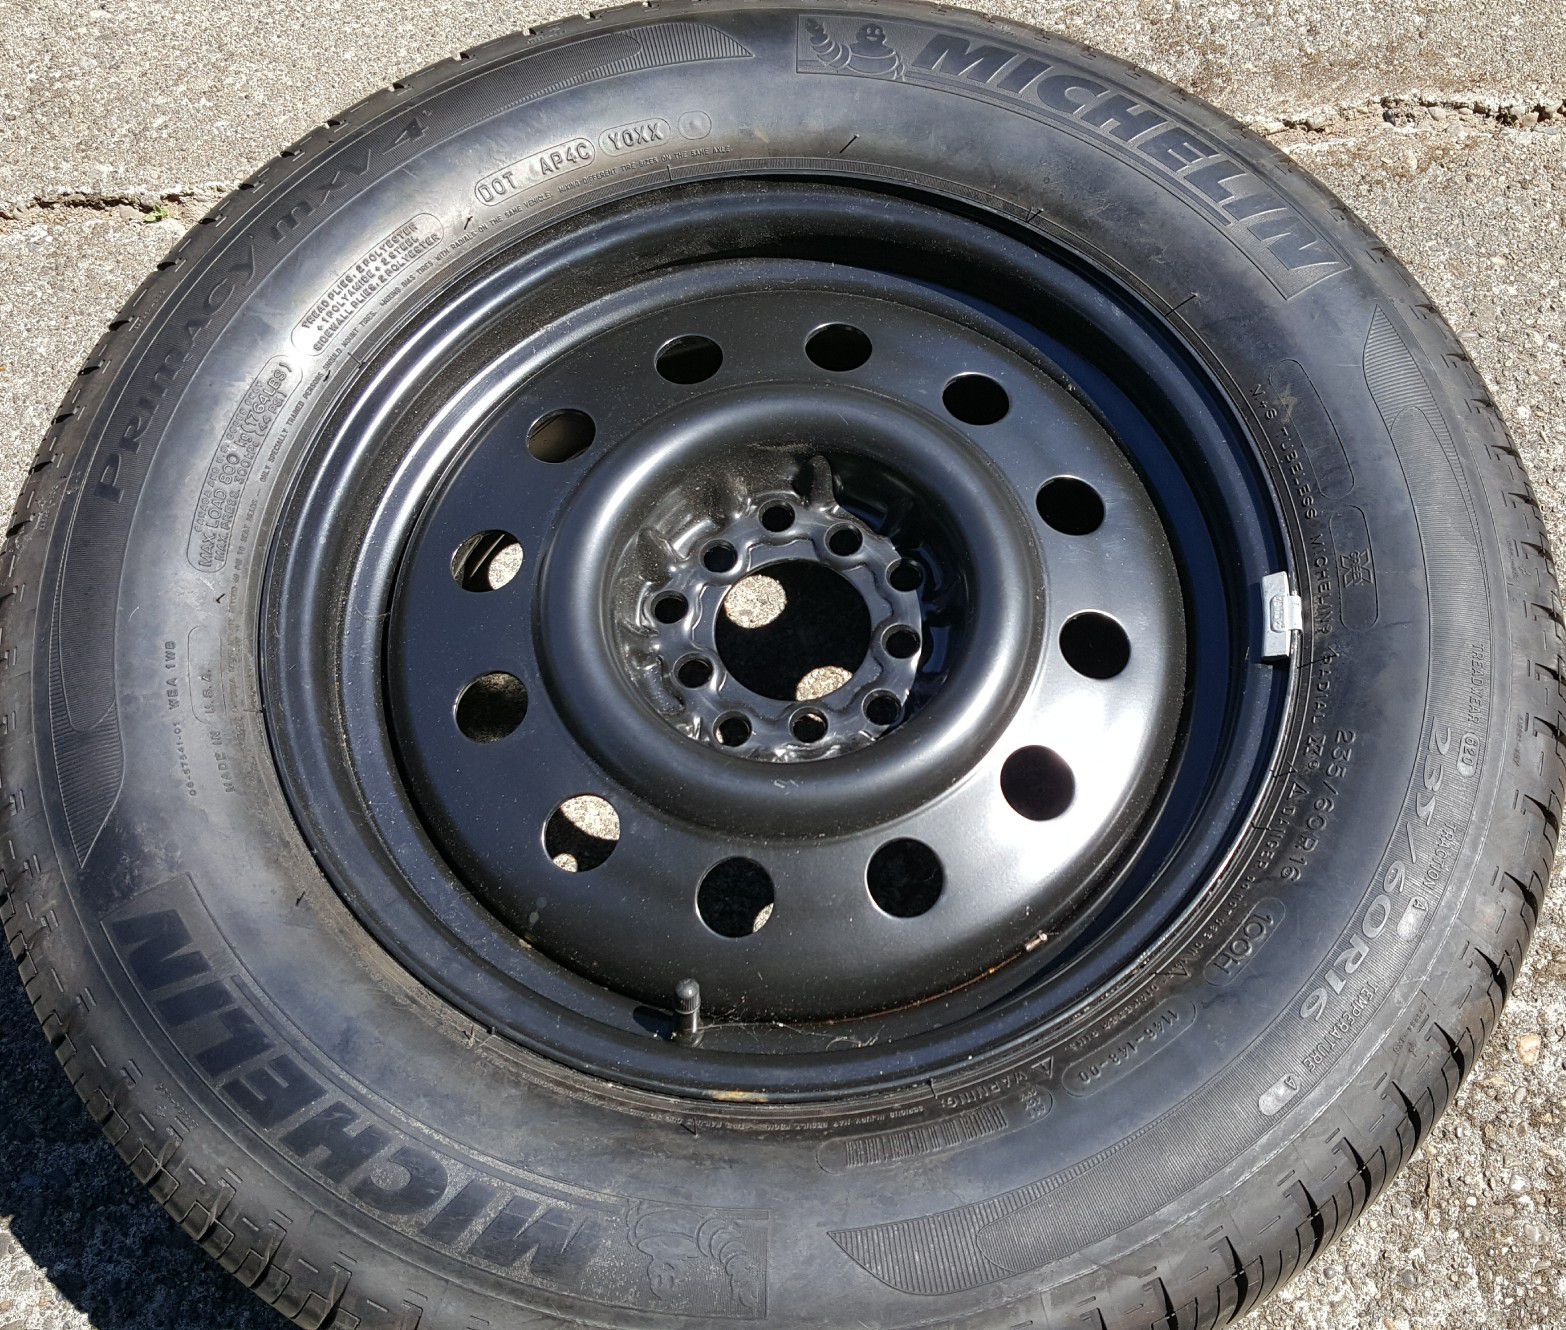 16" Michelin tire on rim 235/60R16